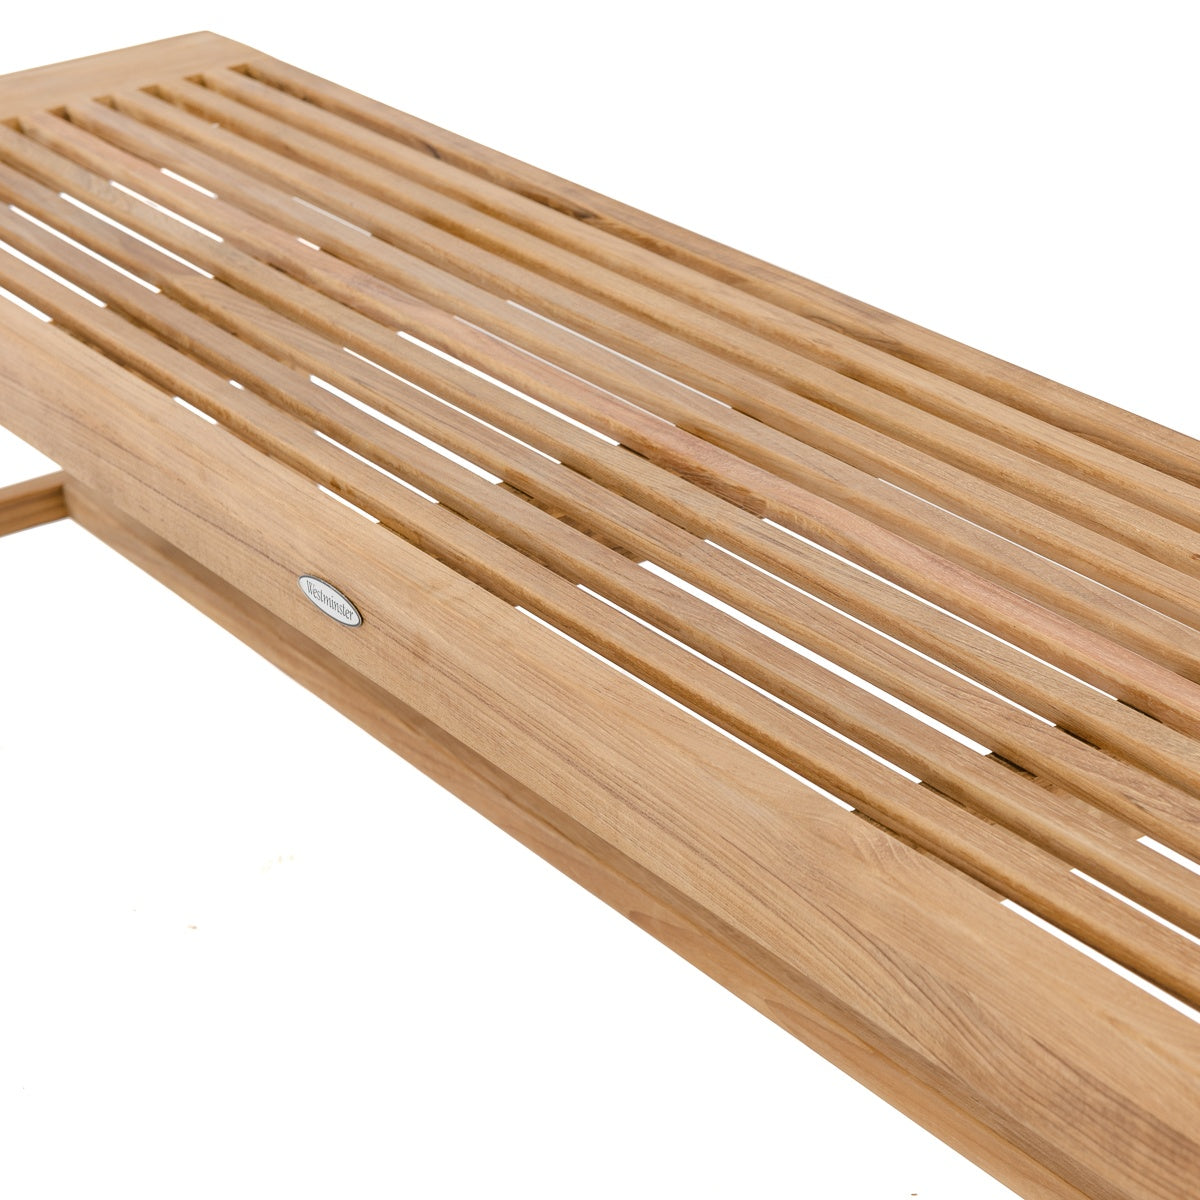 Westminster Teak - 6 ft Laguna Teak Backless Bench Also Available in 3ft, 4ft & 5ft Lengths - 13917